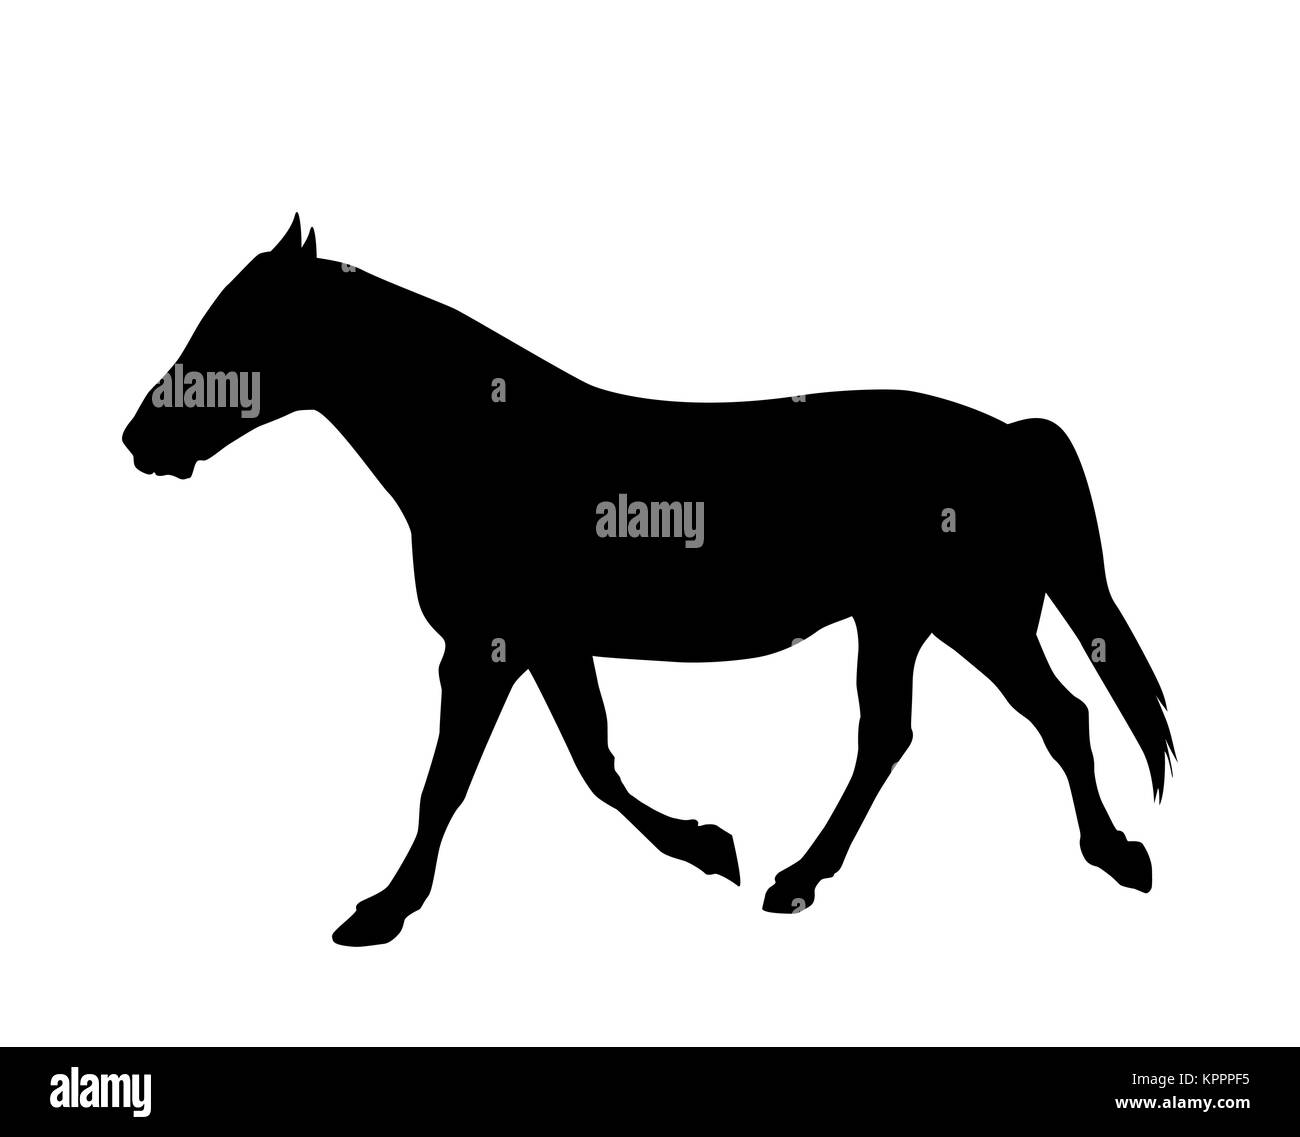 Adesivo per auto silhouette a cavallo. Illustrazione Vettoriale. Illustrazione Vettoriale